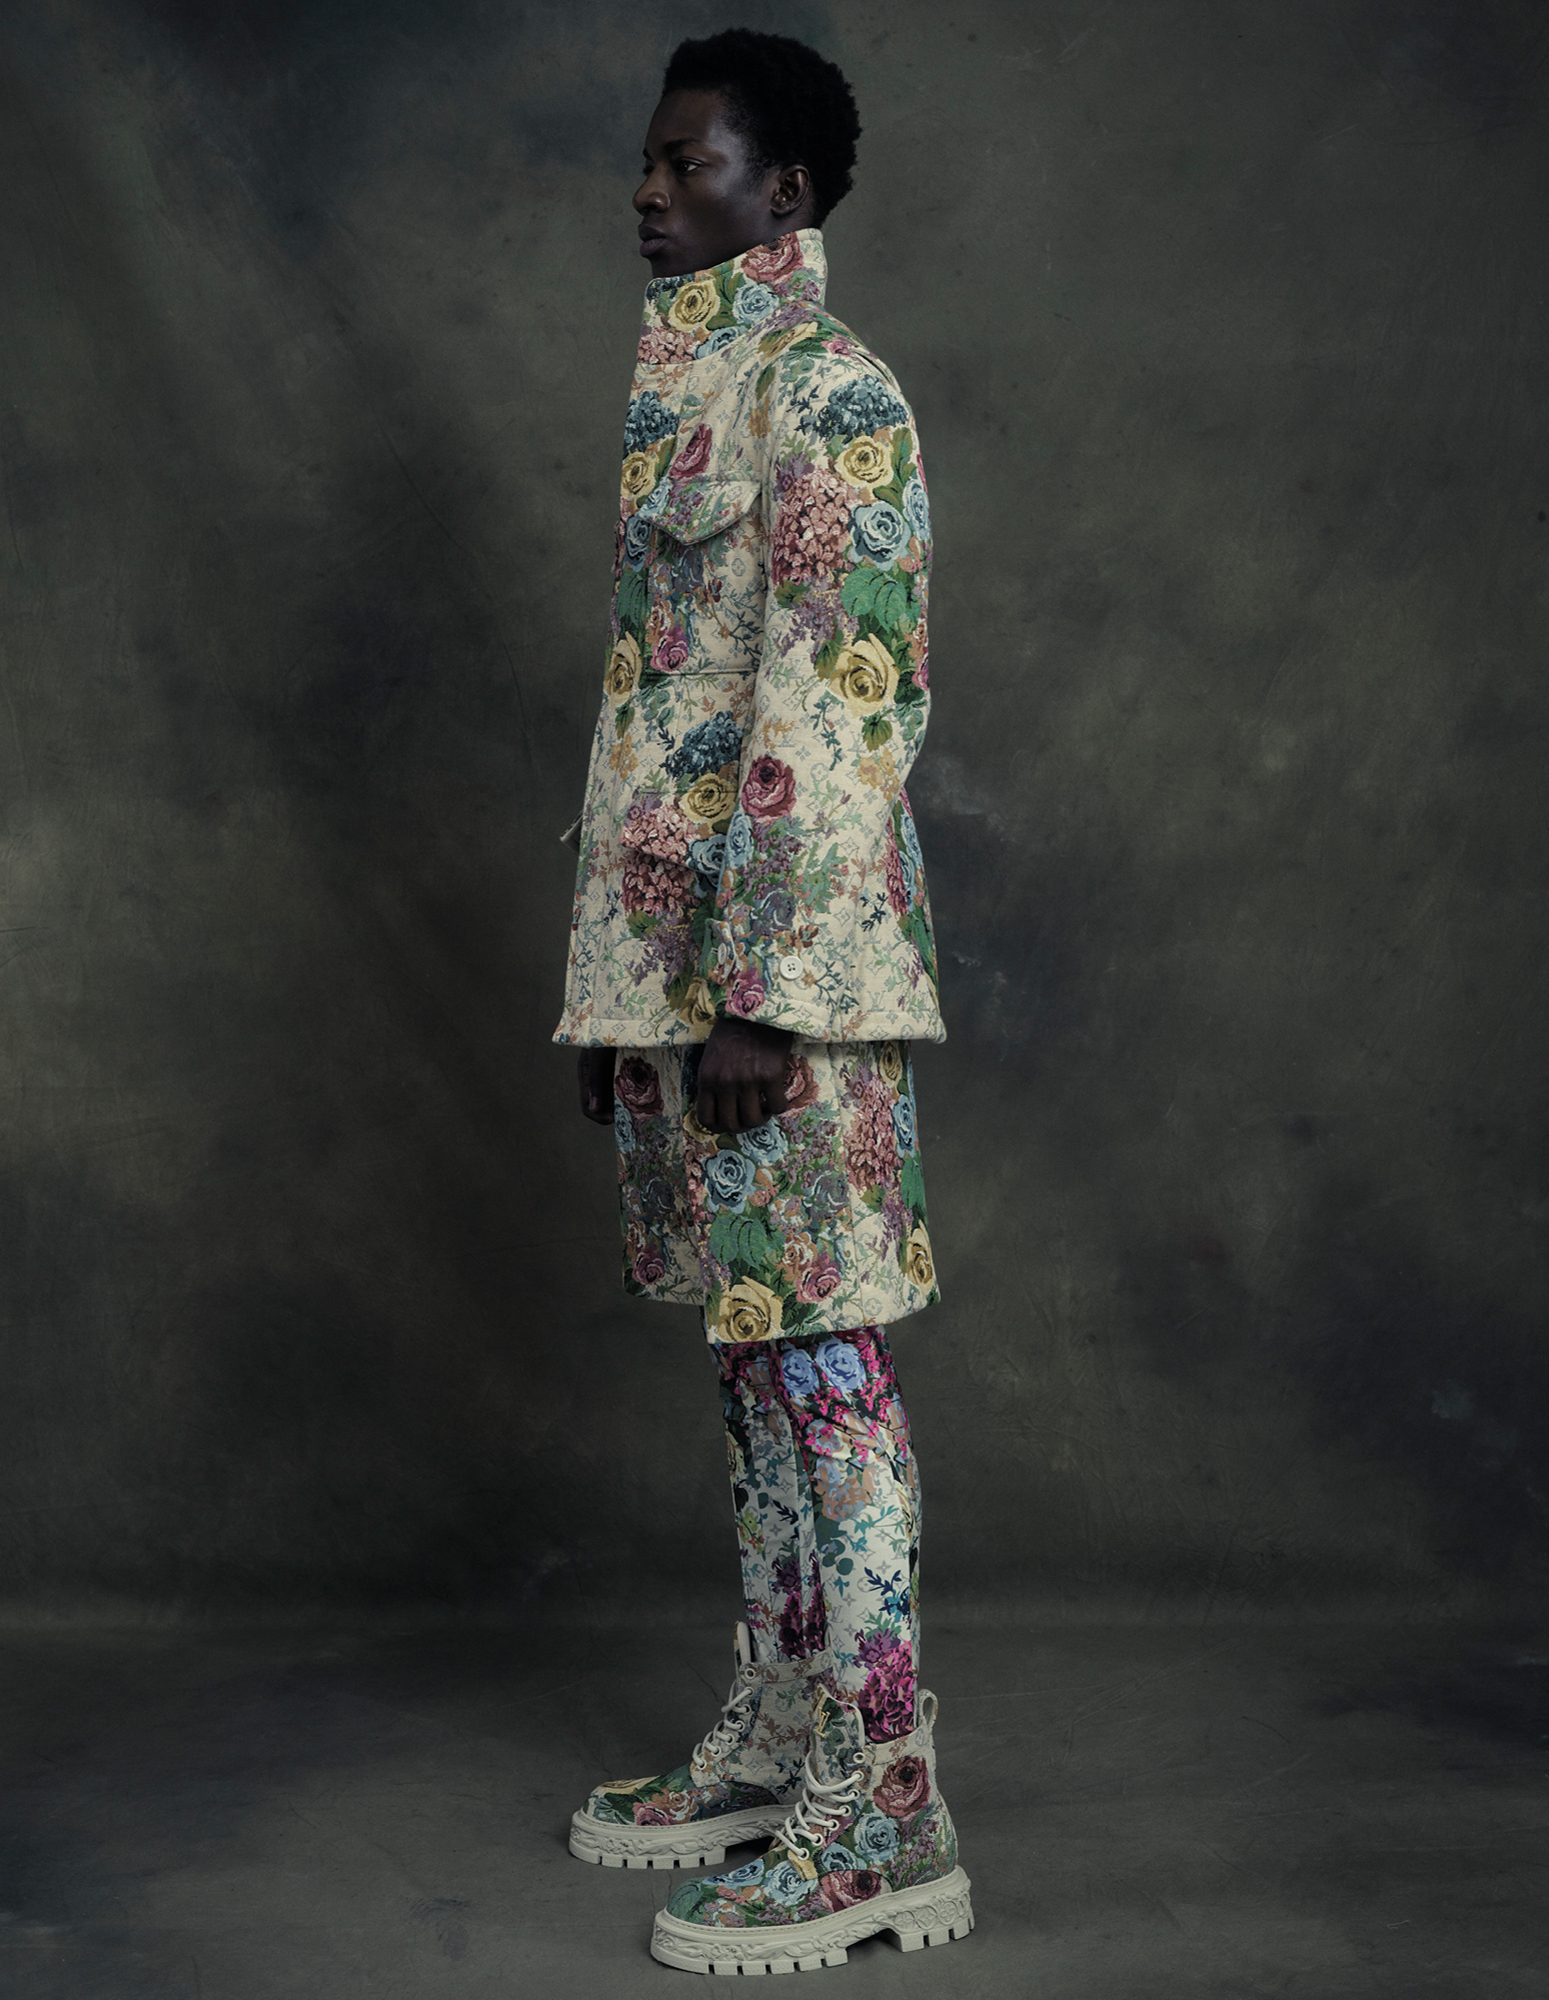 Mann im seitenprofil, trägt florales Muster